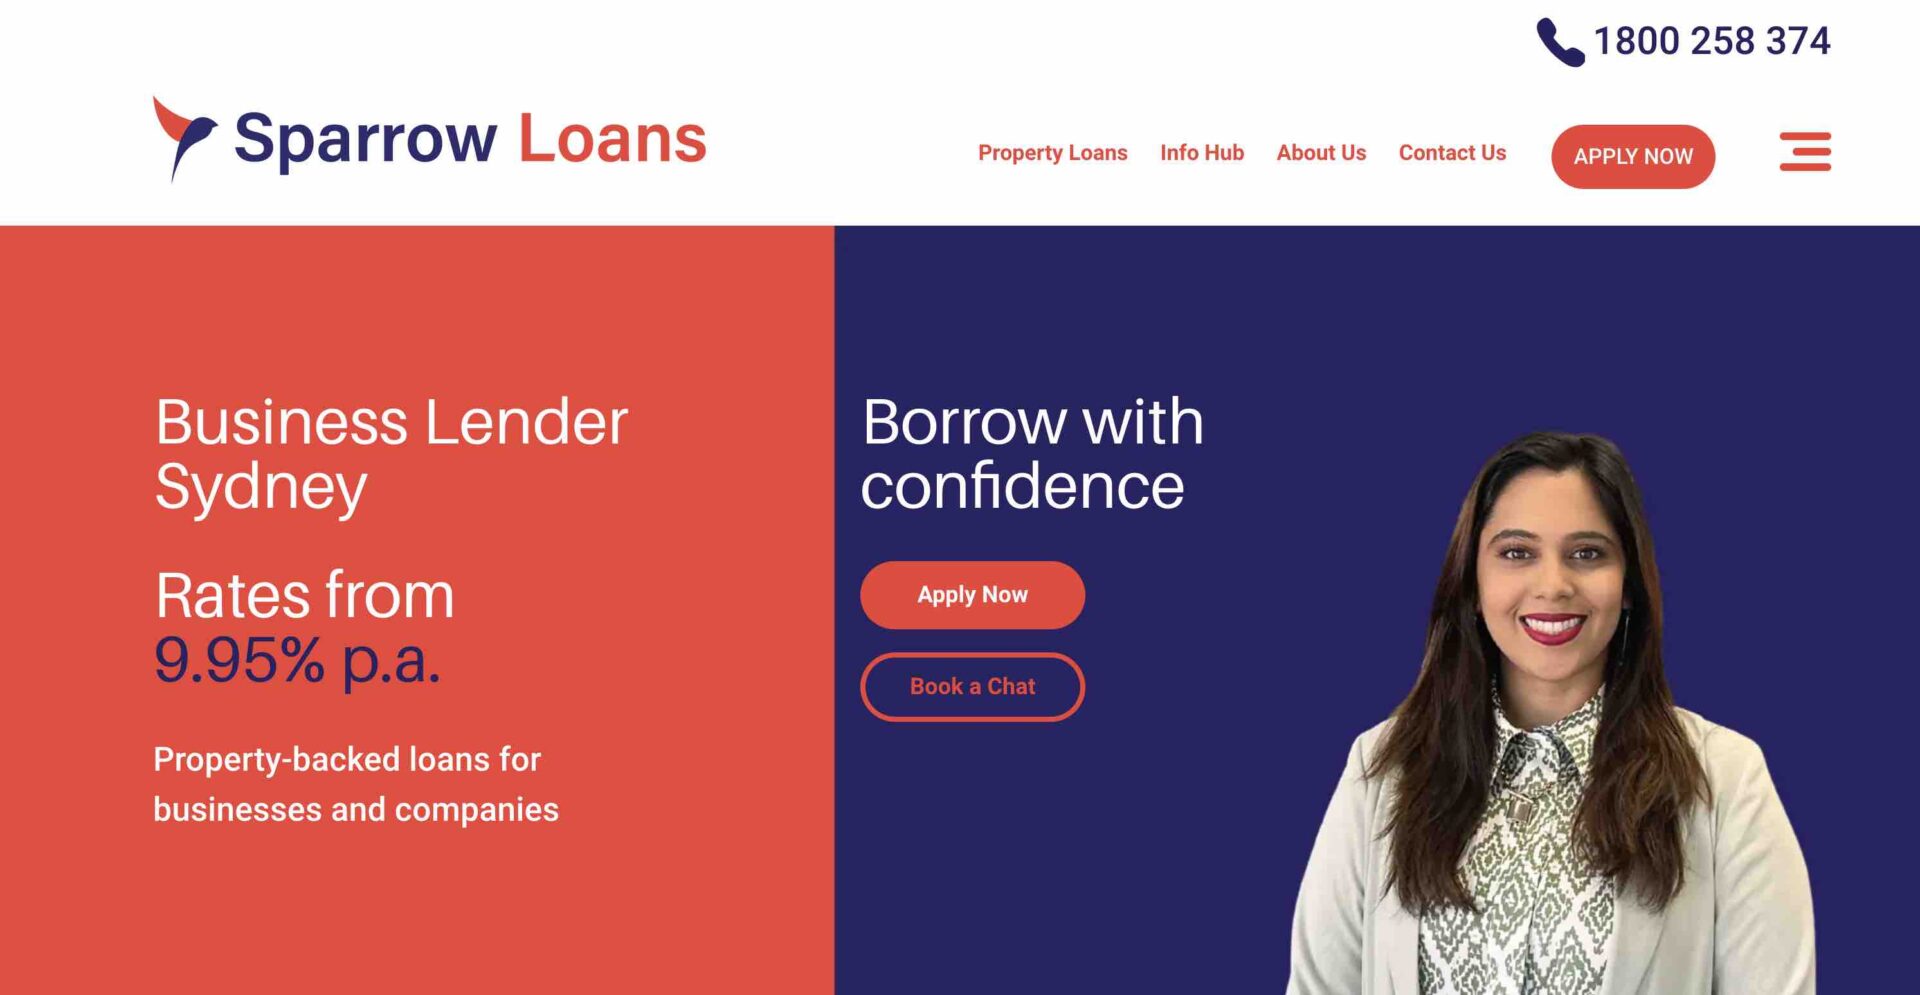 SEO case study - sparrow loans